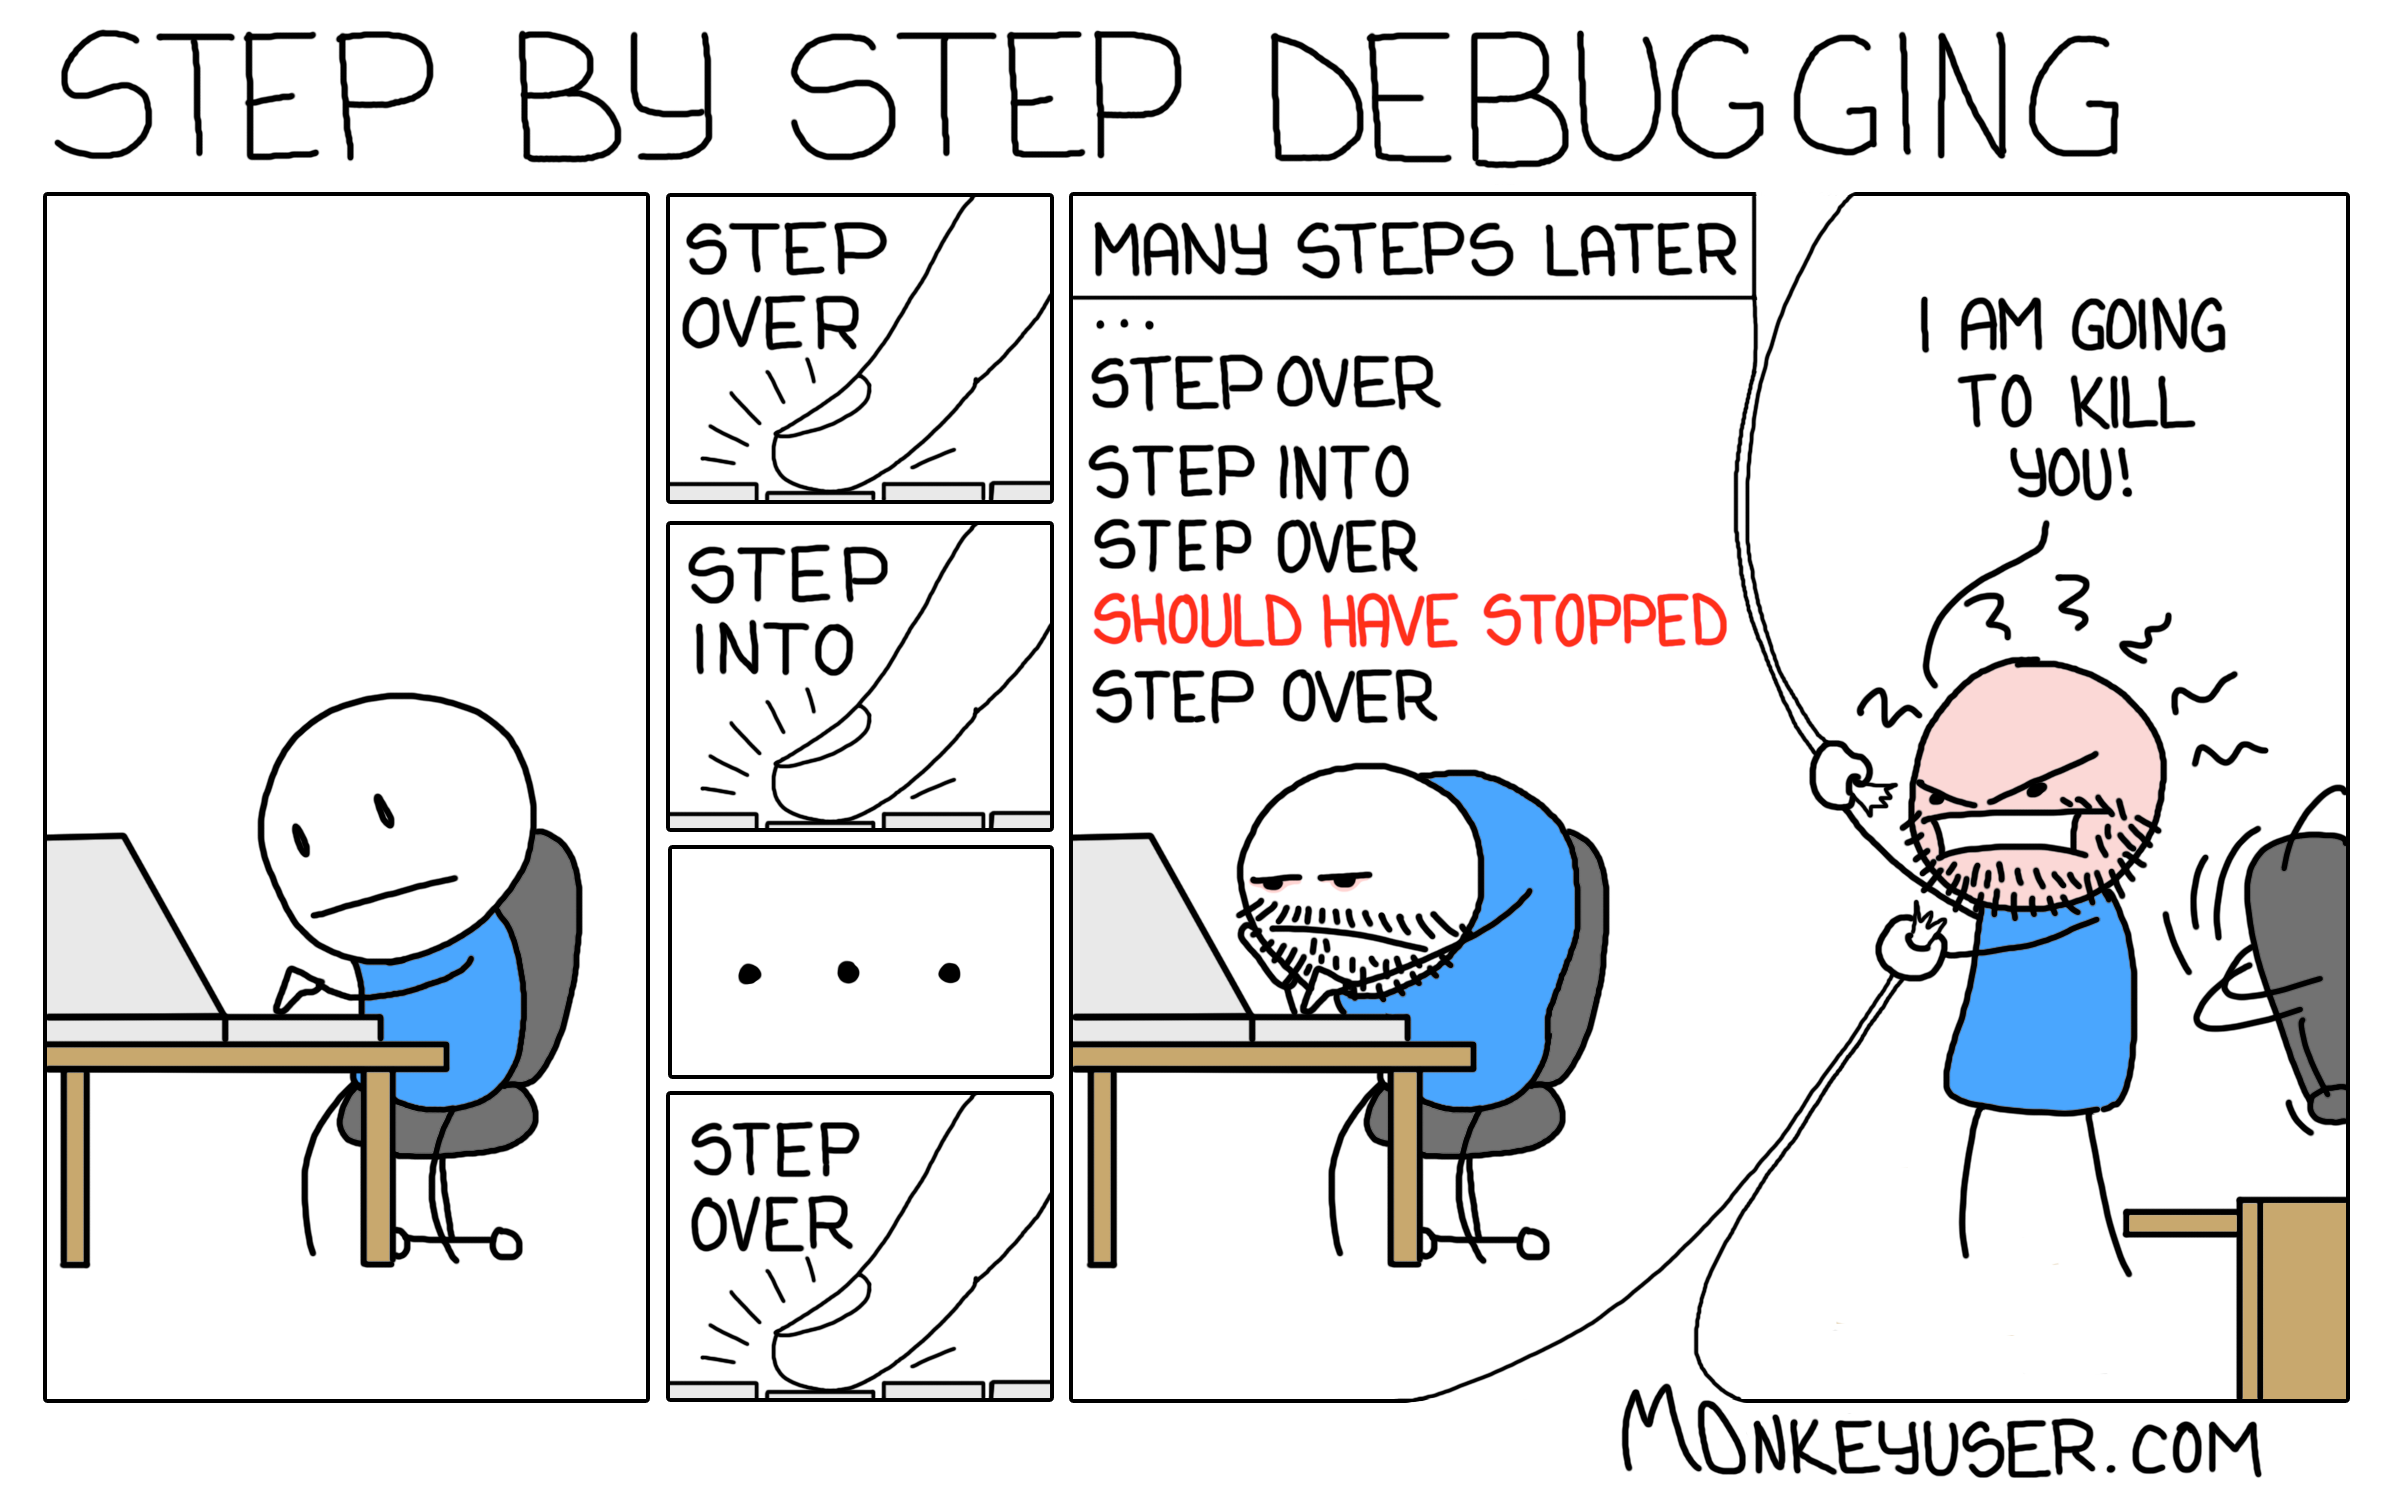 MonkeyUser: Step-By-Step Debugging